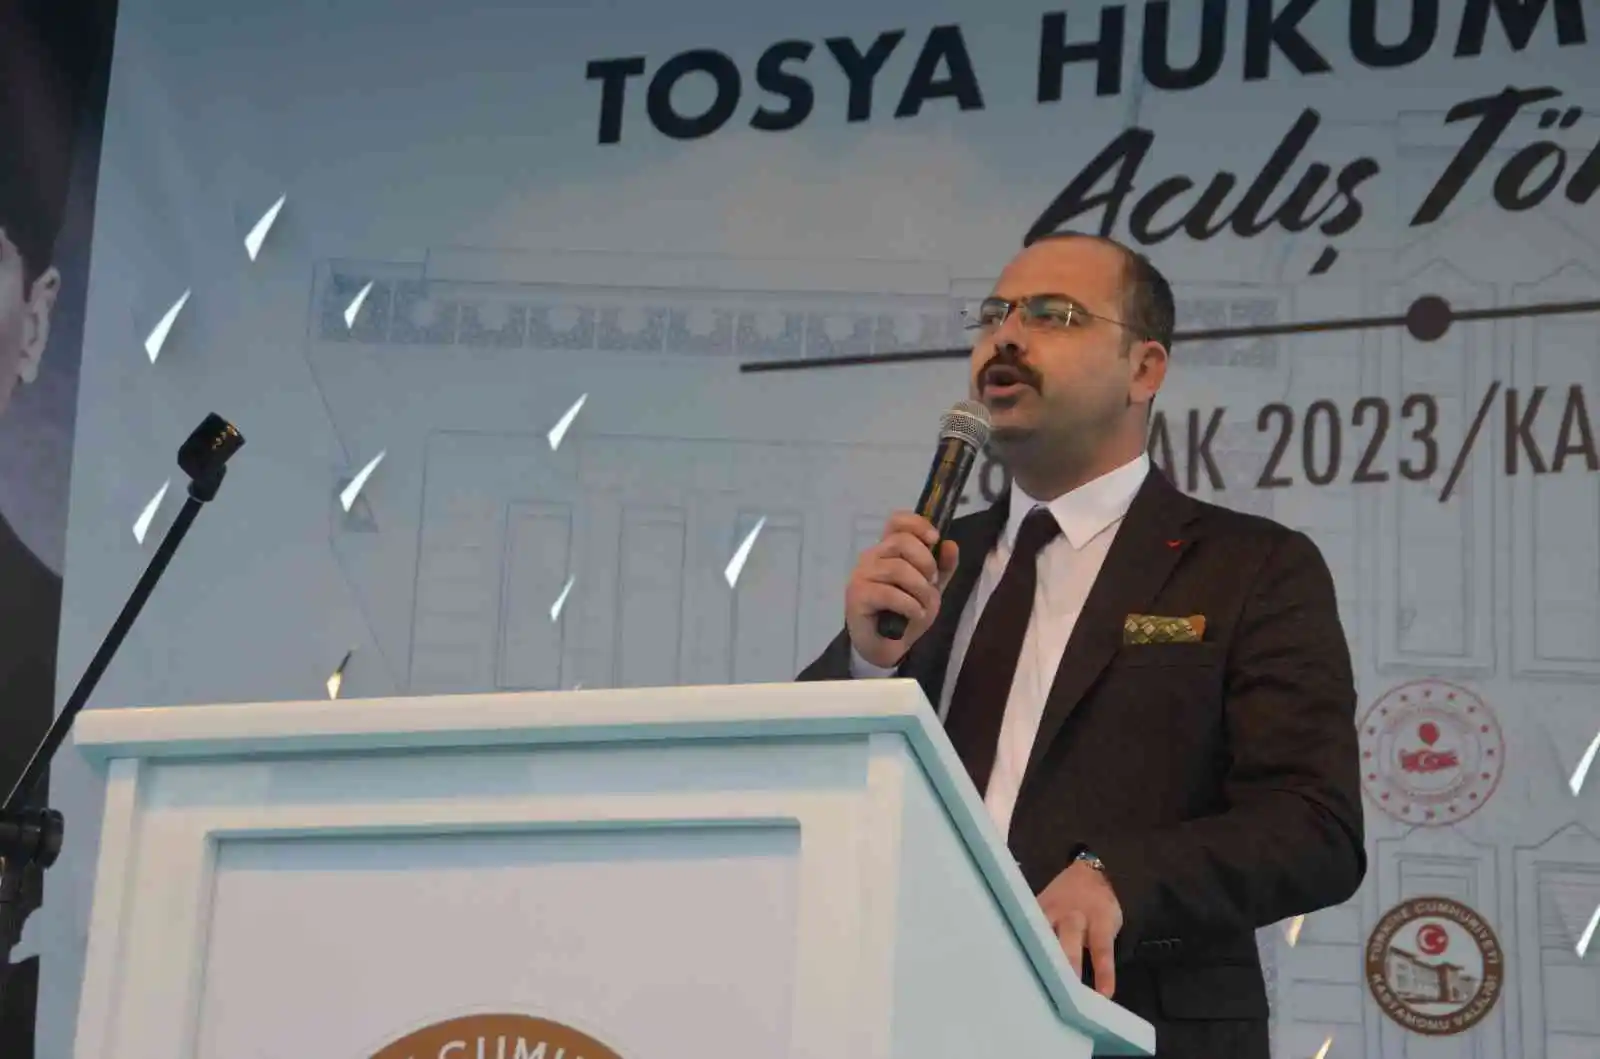 Tosya Hükümet Konağı, İçişleri Bakanı Süleyman Soylu’nun katılımıyla açıldı
